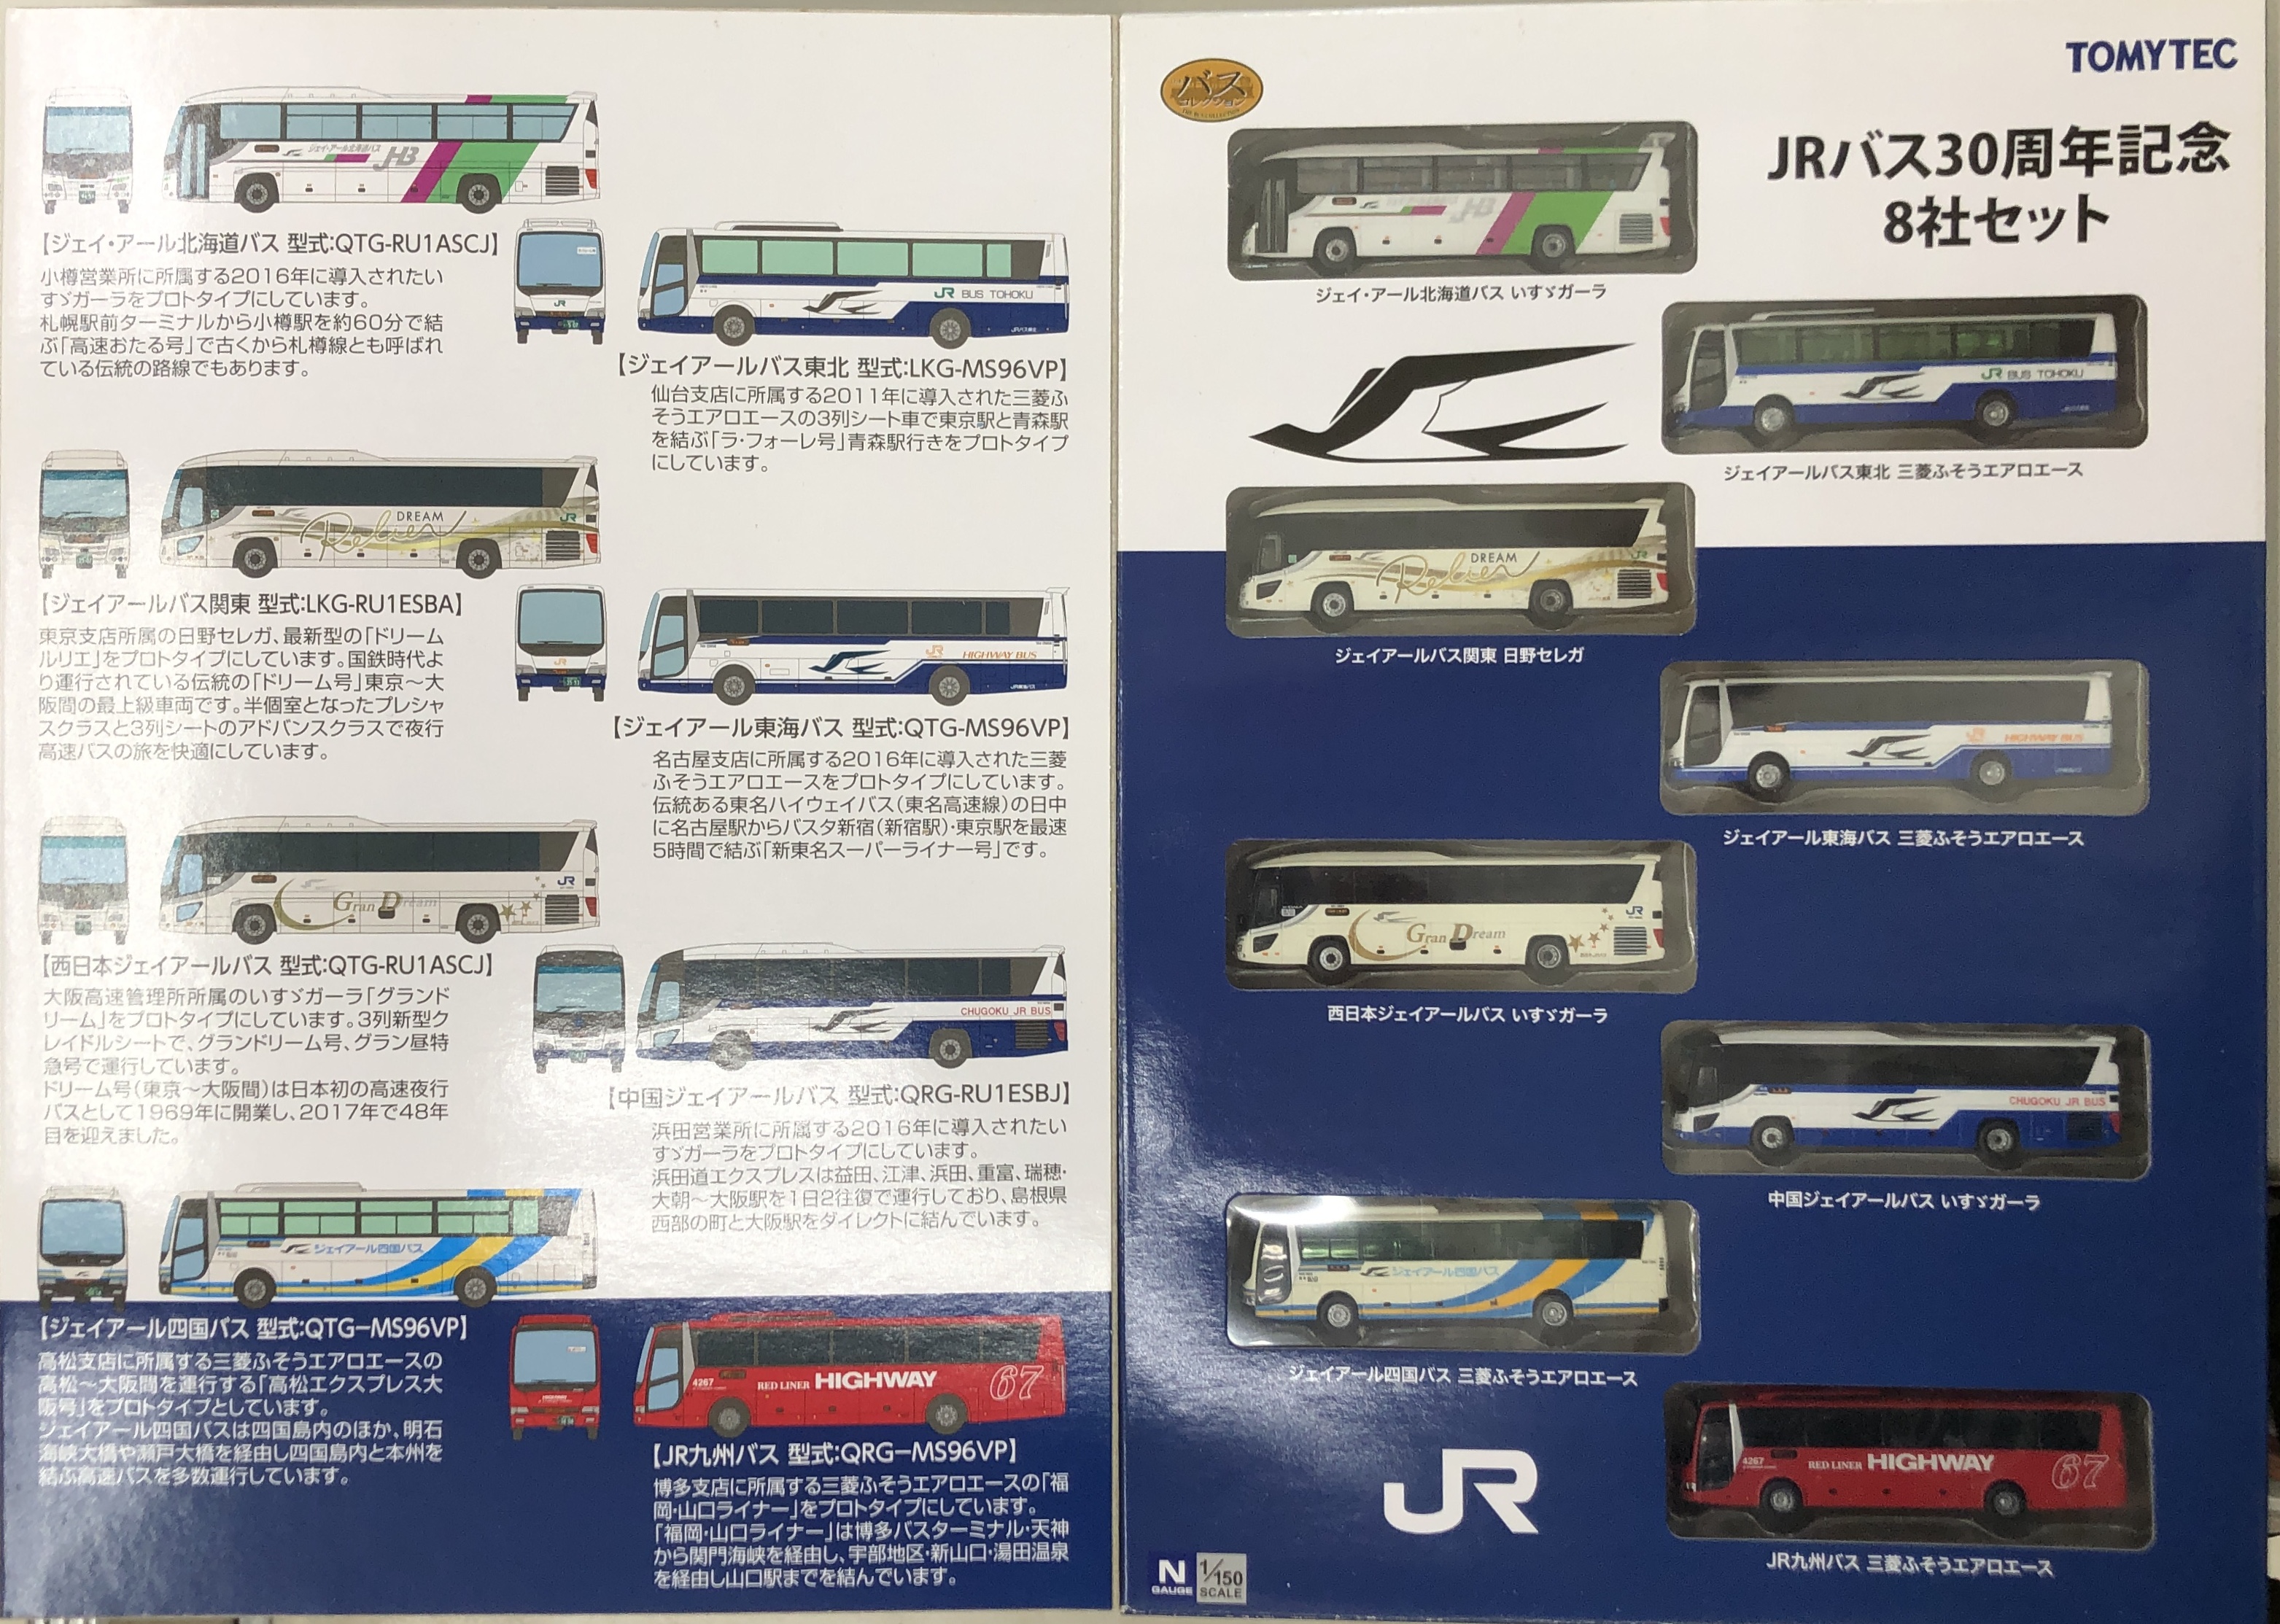 公式]鉄道模型((N139-N146) ザ・バスコレクション JRバス30周年記念8社